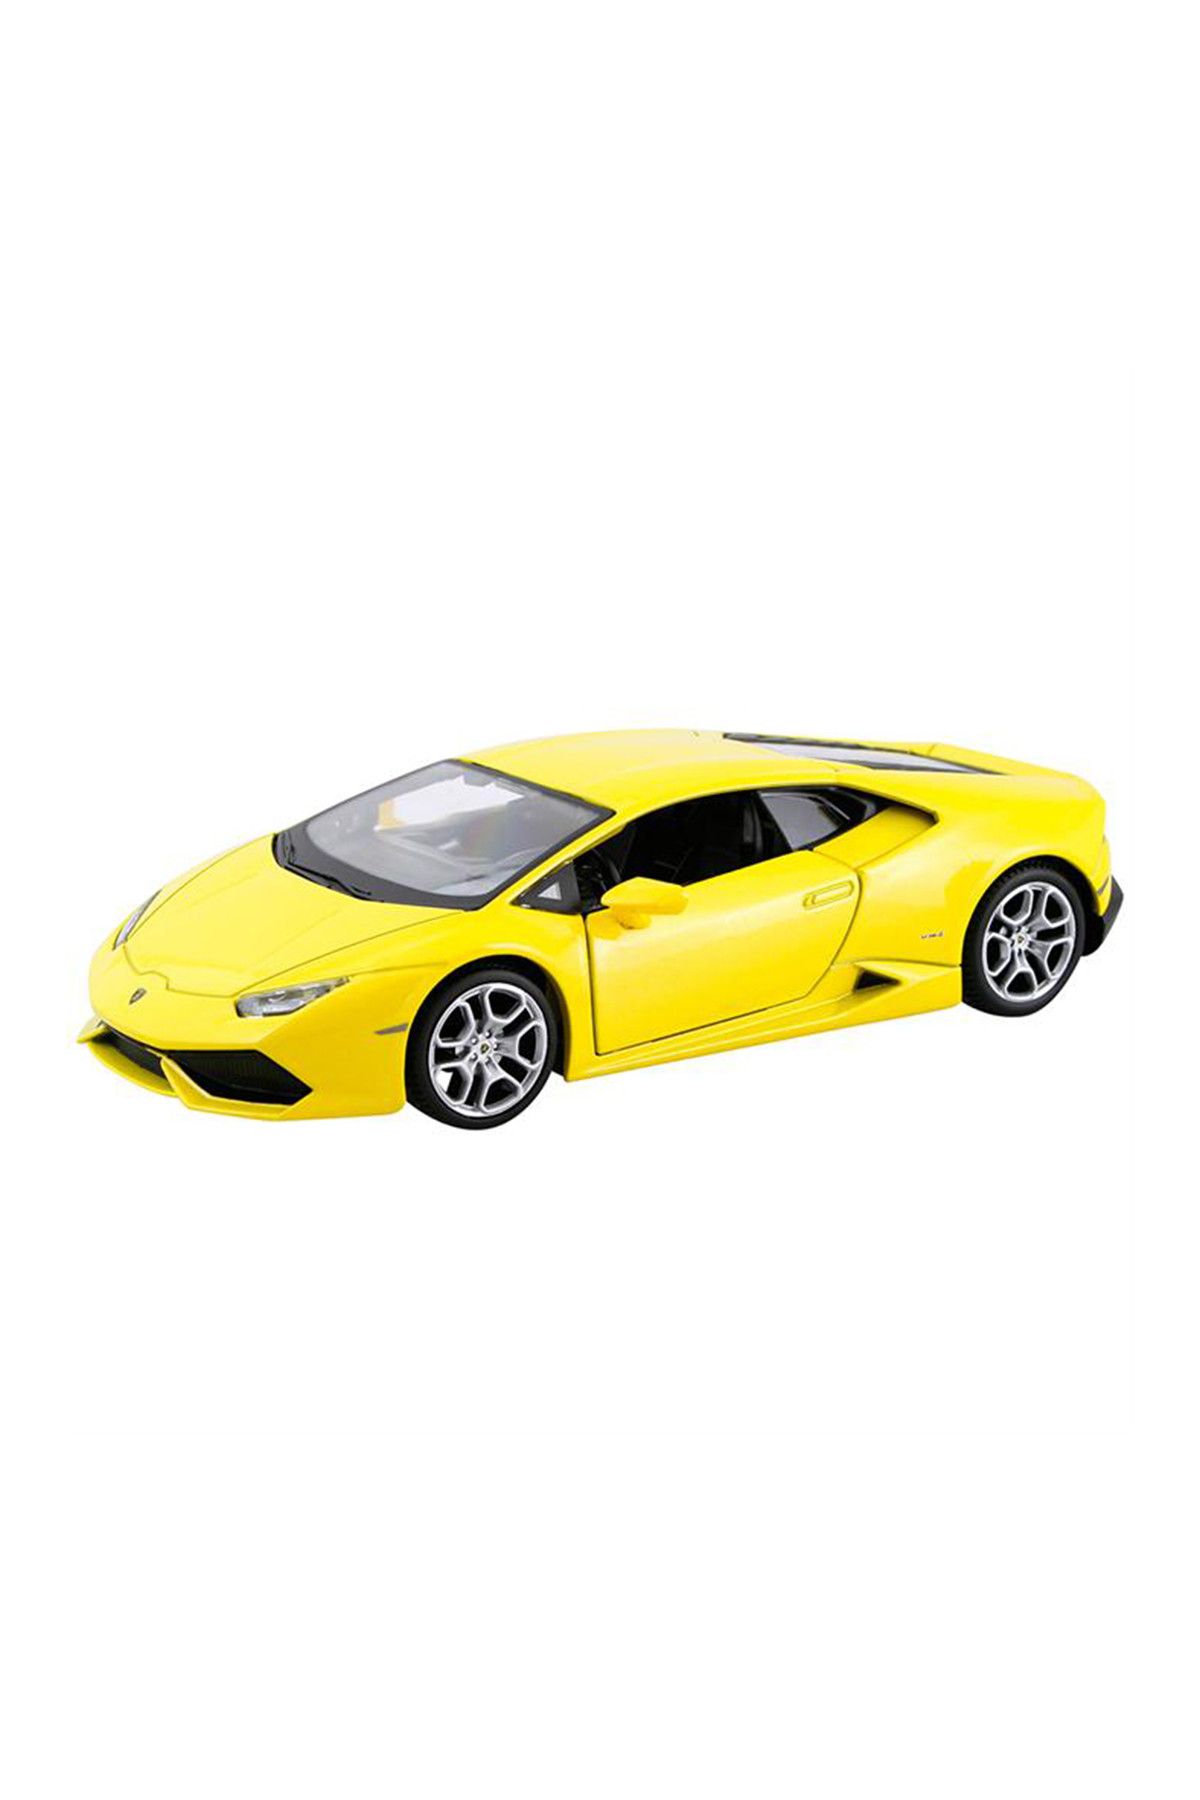 Maisto 1/24 Lamborghini Huracan Lp 610-4 Yellow MAY/31509-2